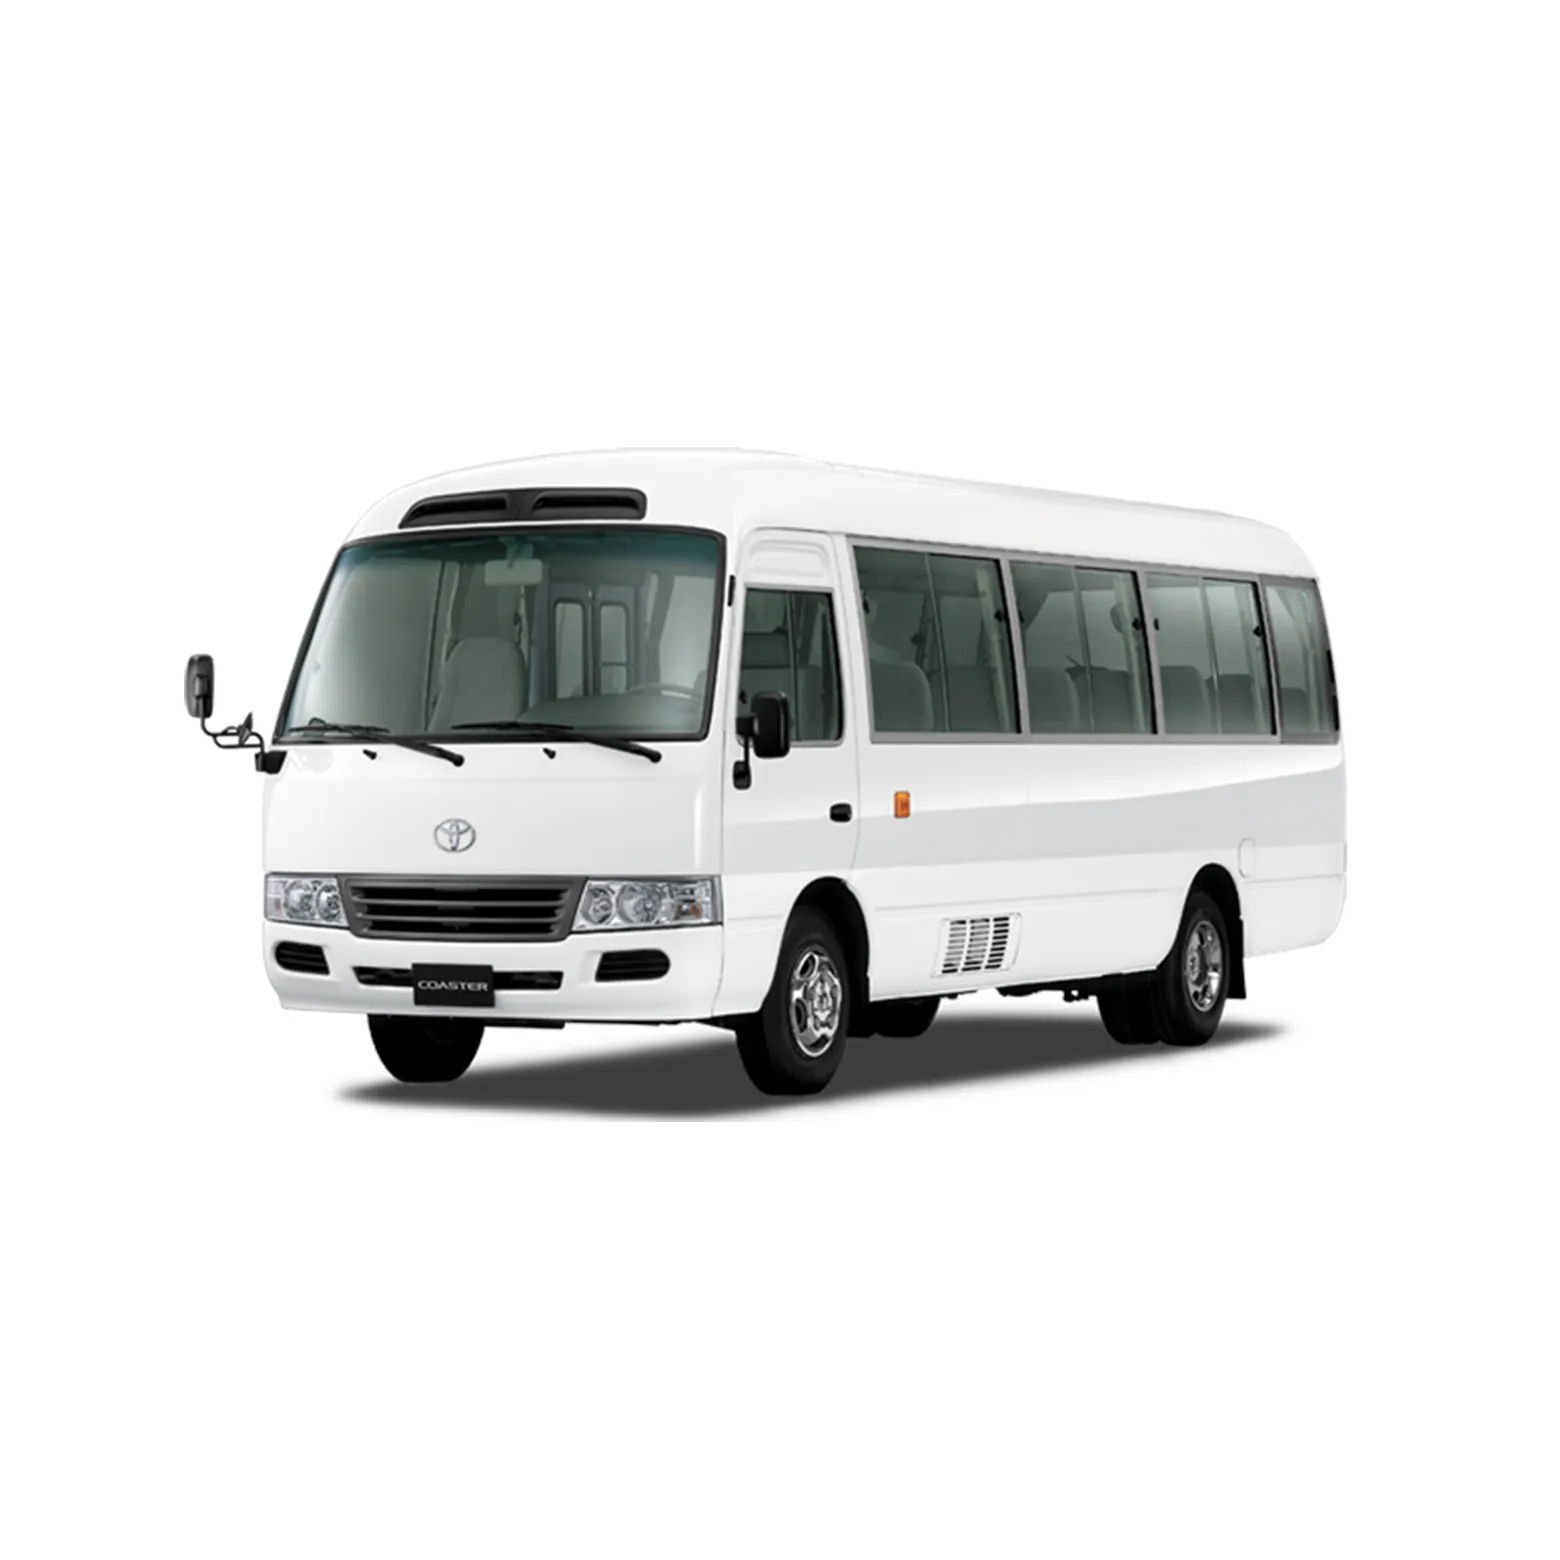 Dijual Coaster LHD 30 Tempat Duduk Toyota Coaster Bus 2019 Tahun Mesin Yuchai 130 Bus Penumpang 6 Gigi Kecepatan